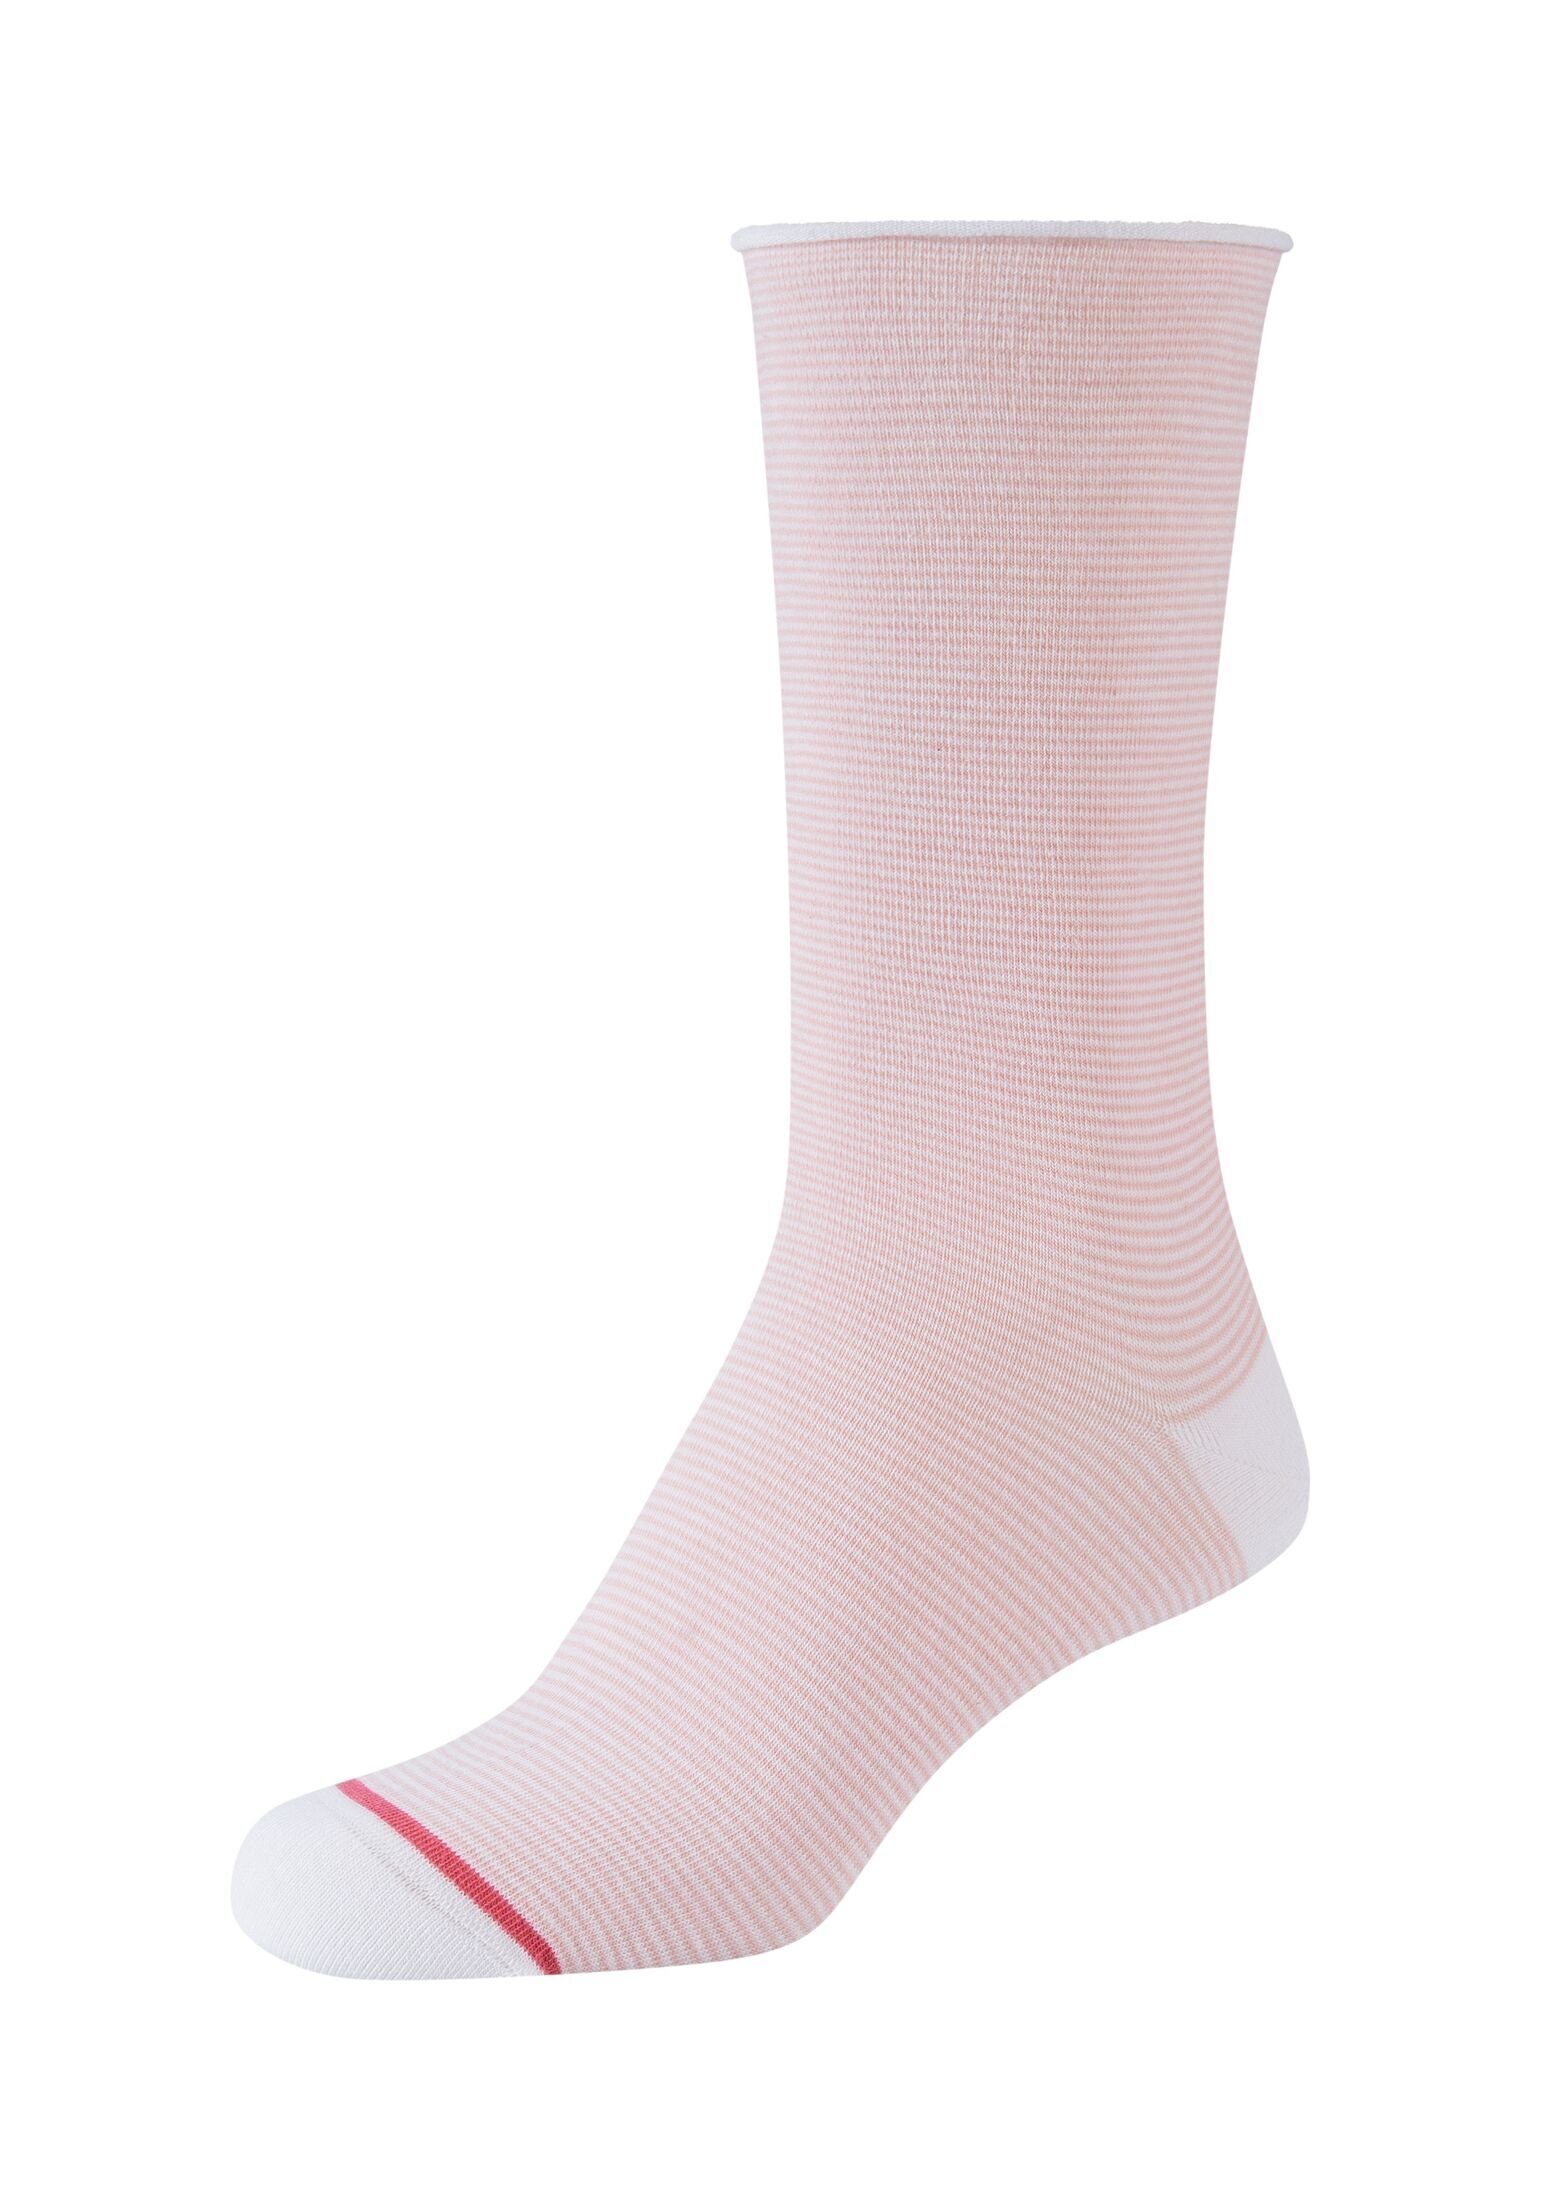 s.Oliver Socken Socken 4er Pack, Vielseitig: mit zartem Muster perfekt für  jede Gelegenheit | Kurzsocken